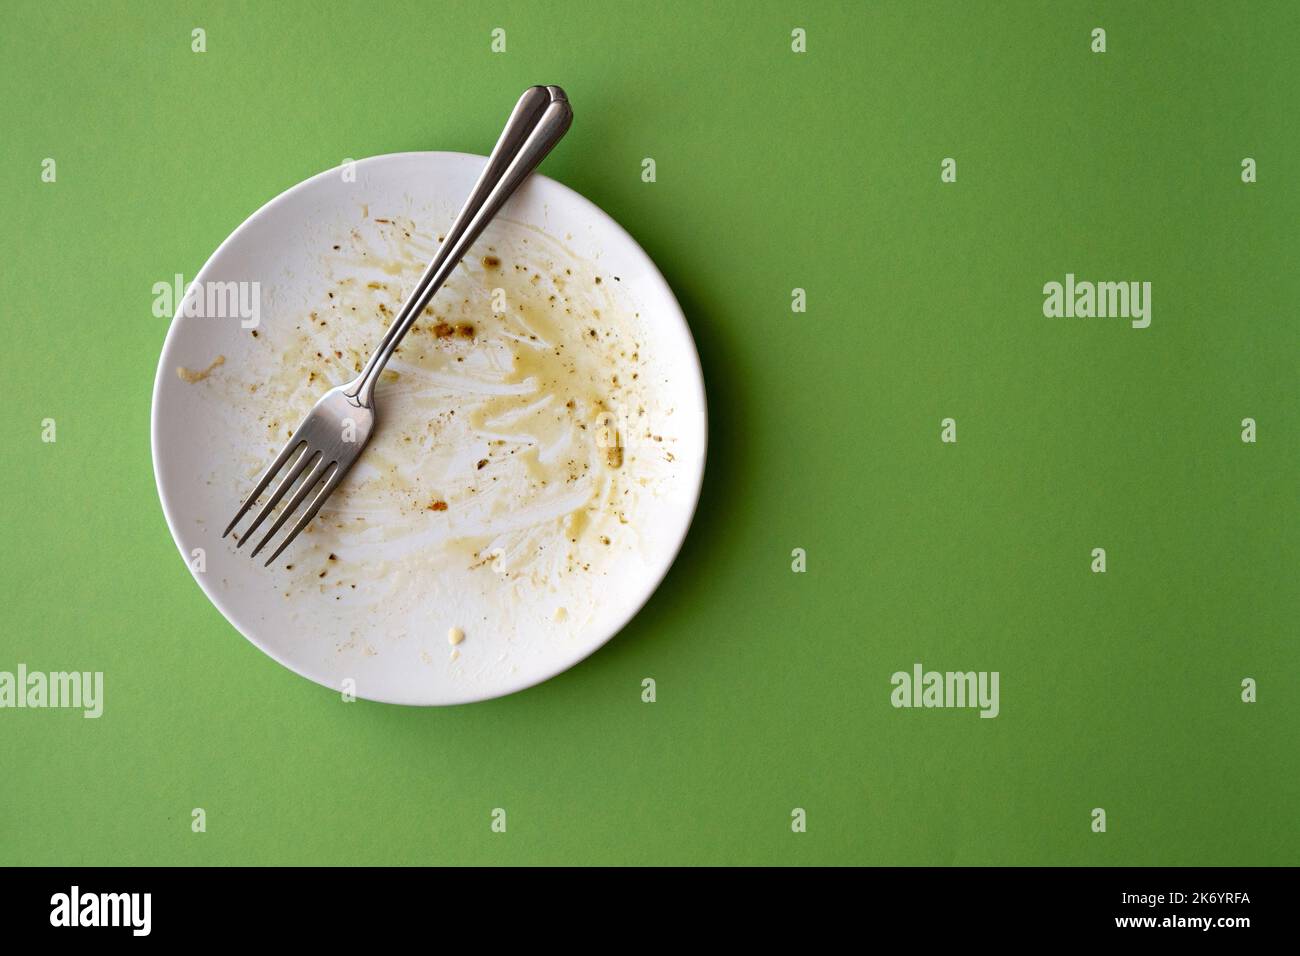 Assiette en céramique blanche avec restes de nourriture, pâtes, huile d'olive, sauce et fourchette sur fond vert. Image créative avec espace pour le texte Banque D'Images